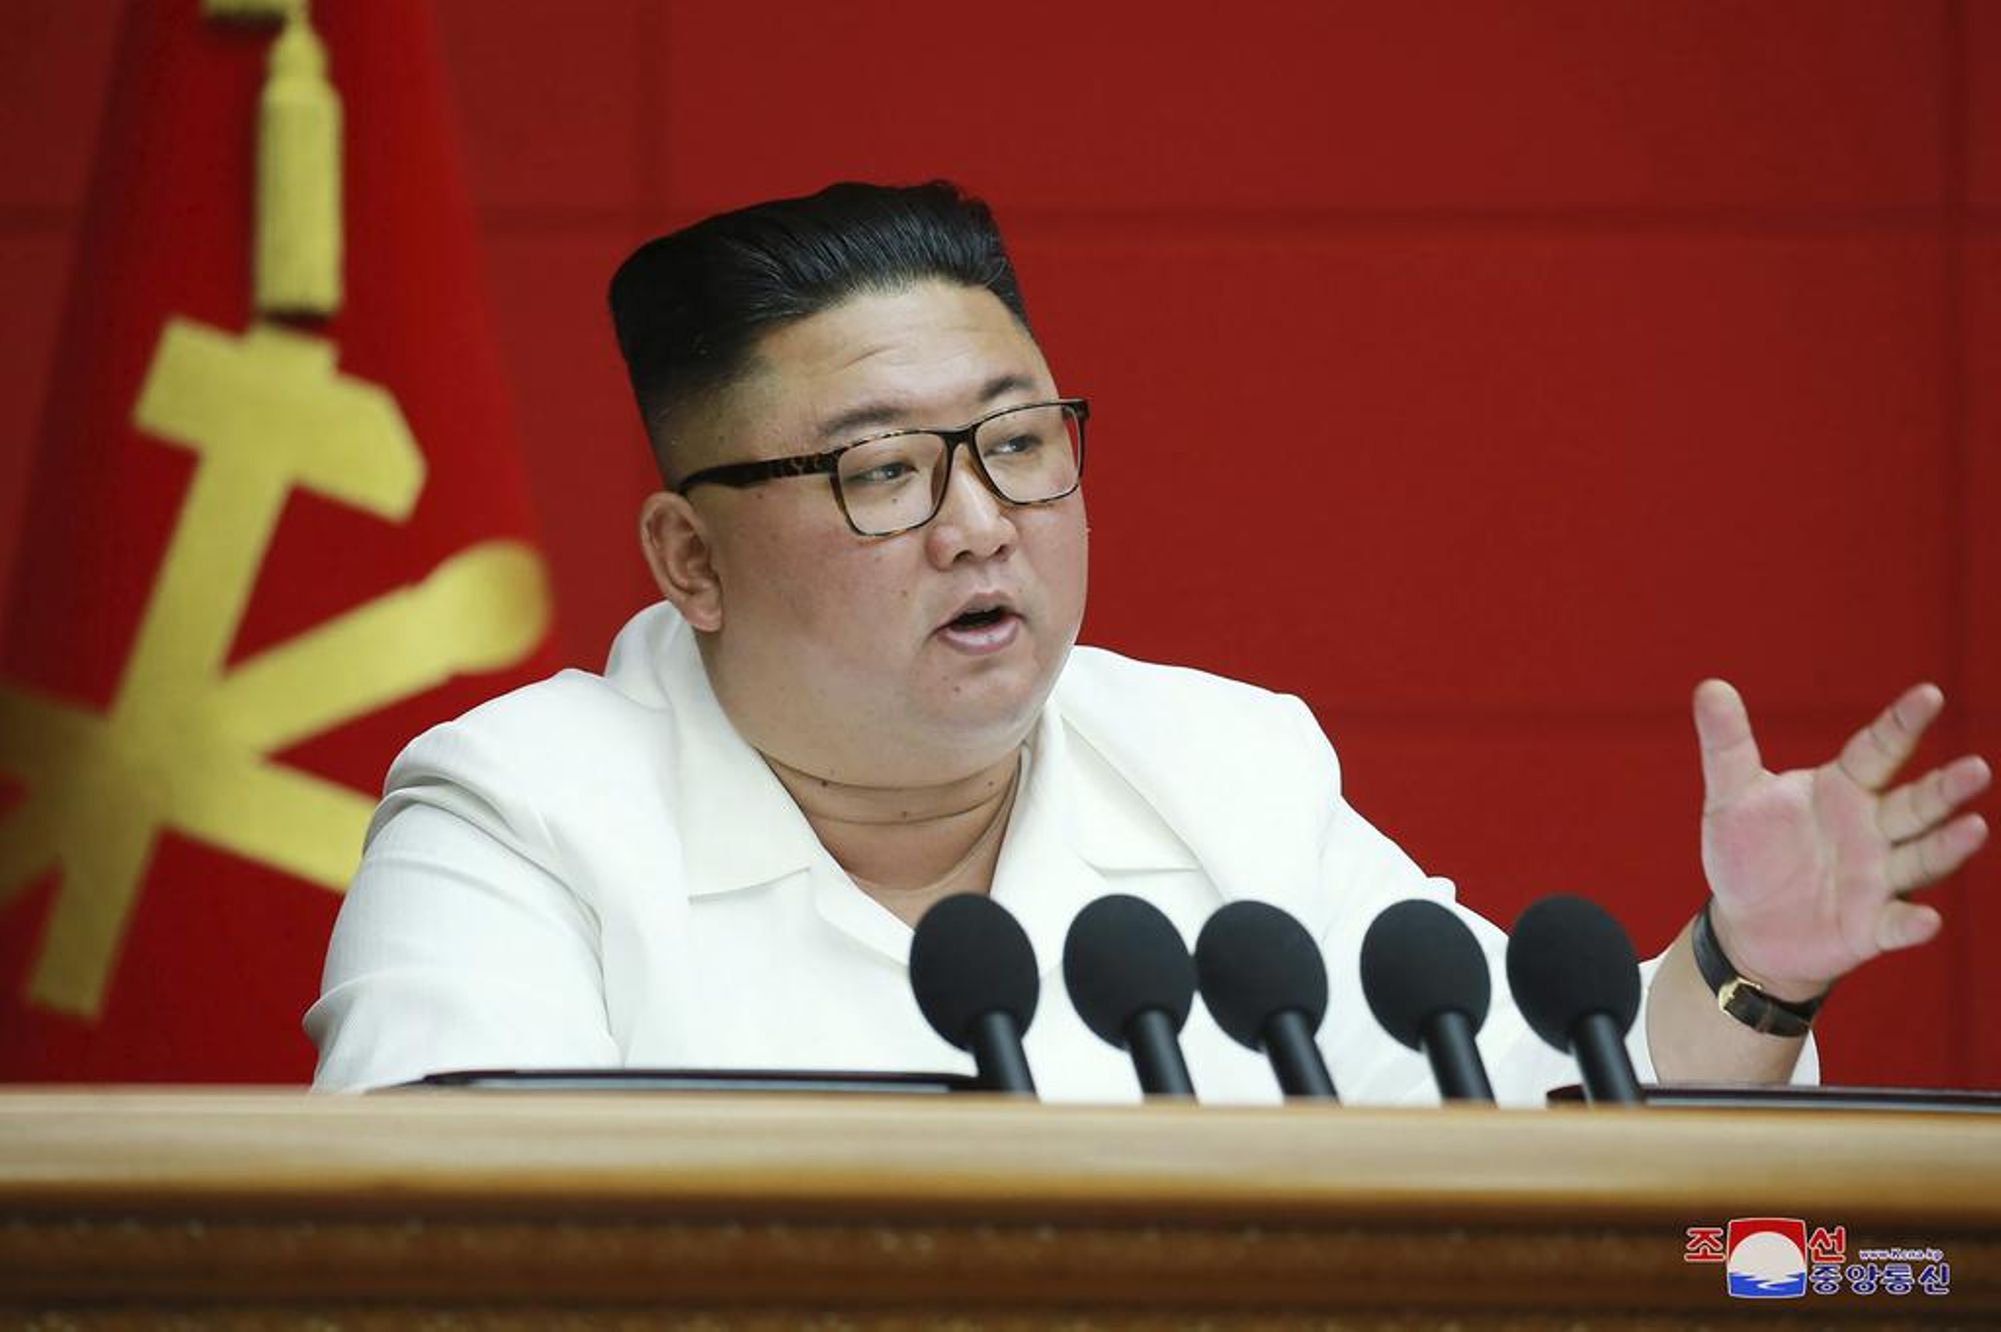 Le dictateur nord-koréen, Kim Jong-Un-Africaguinee.com